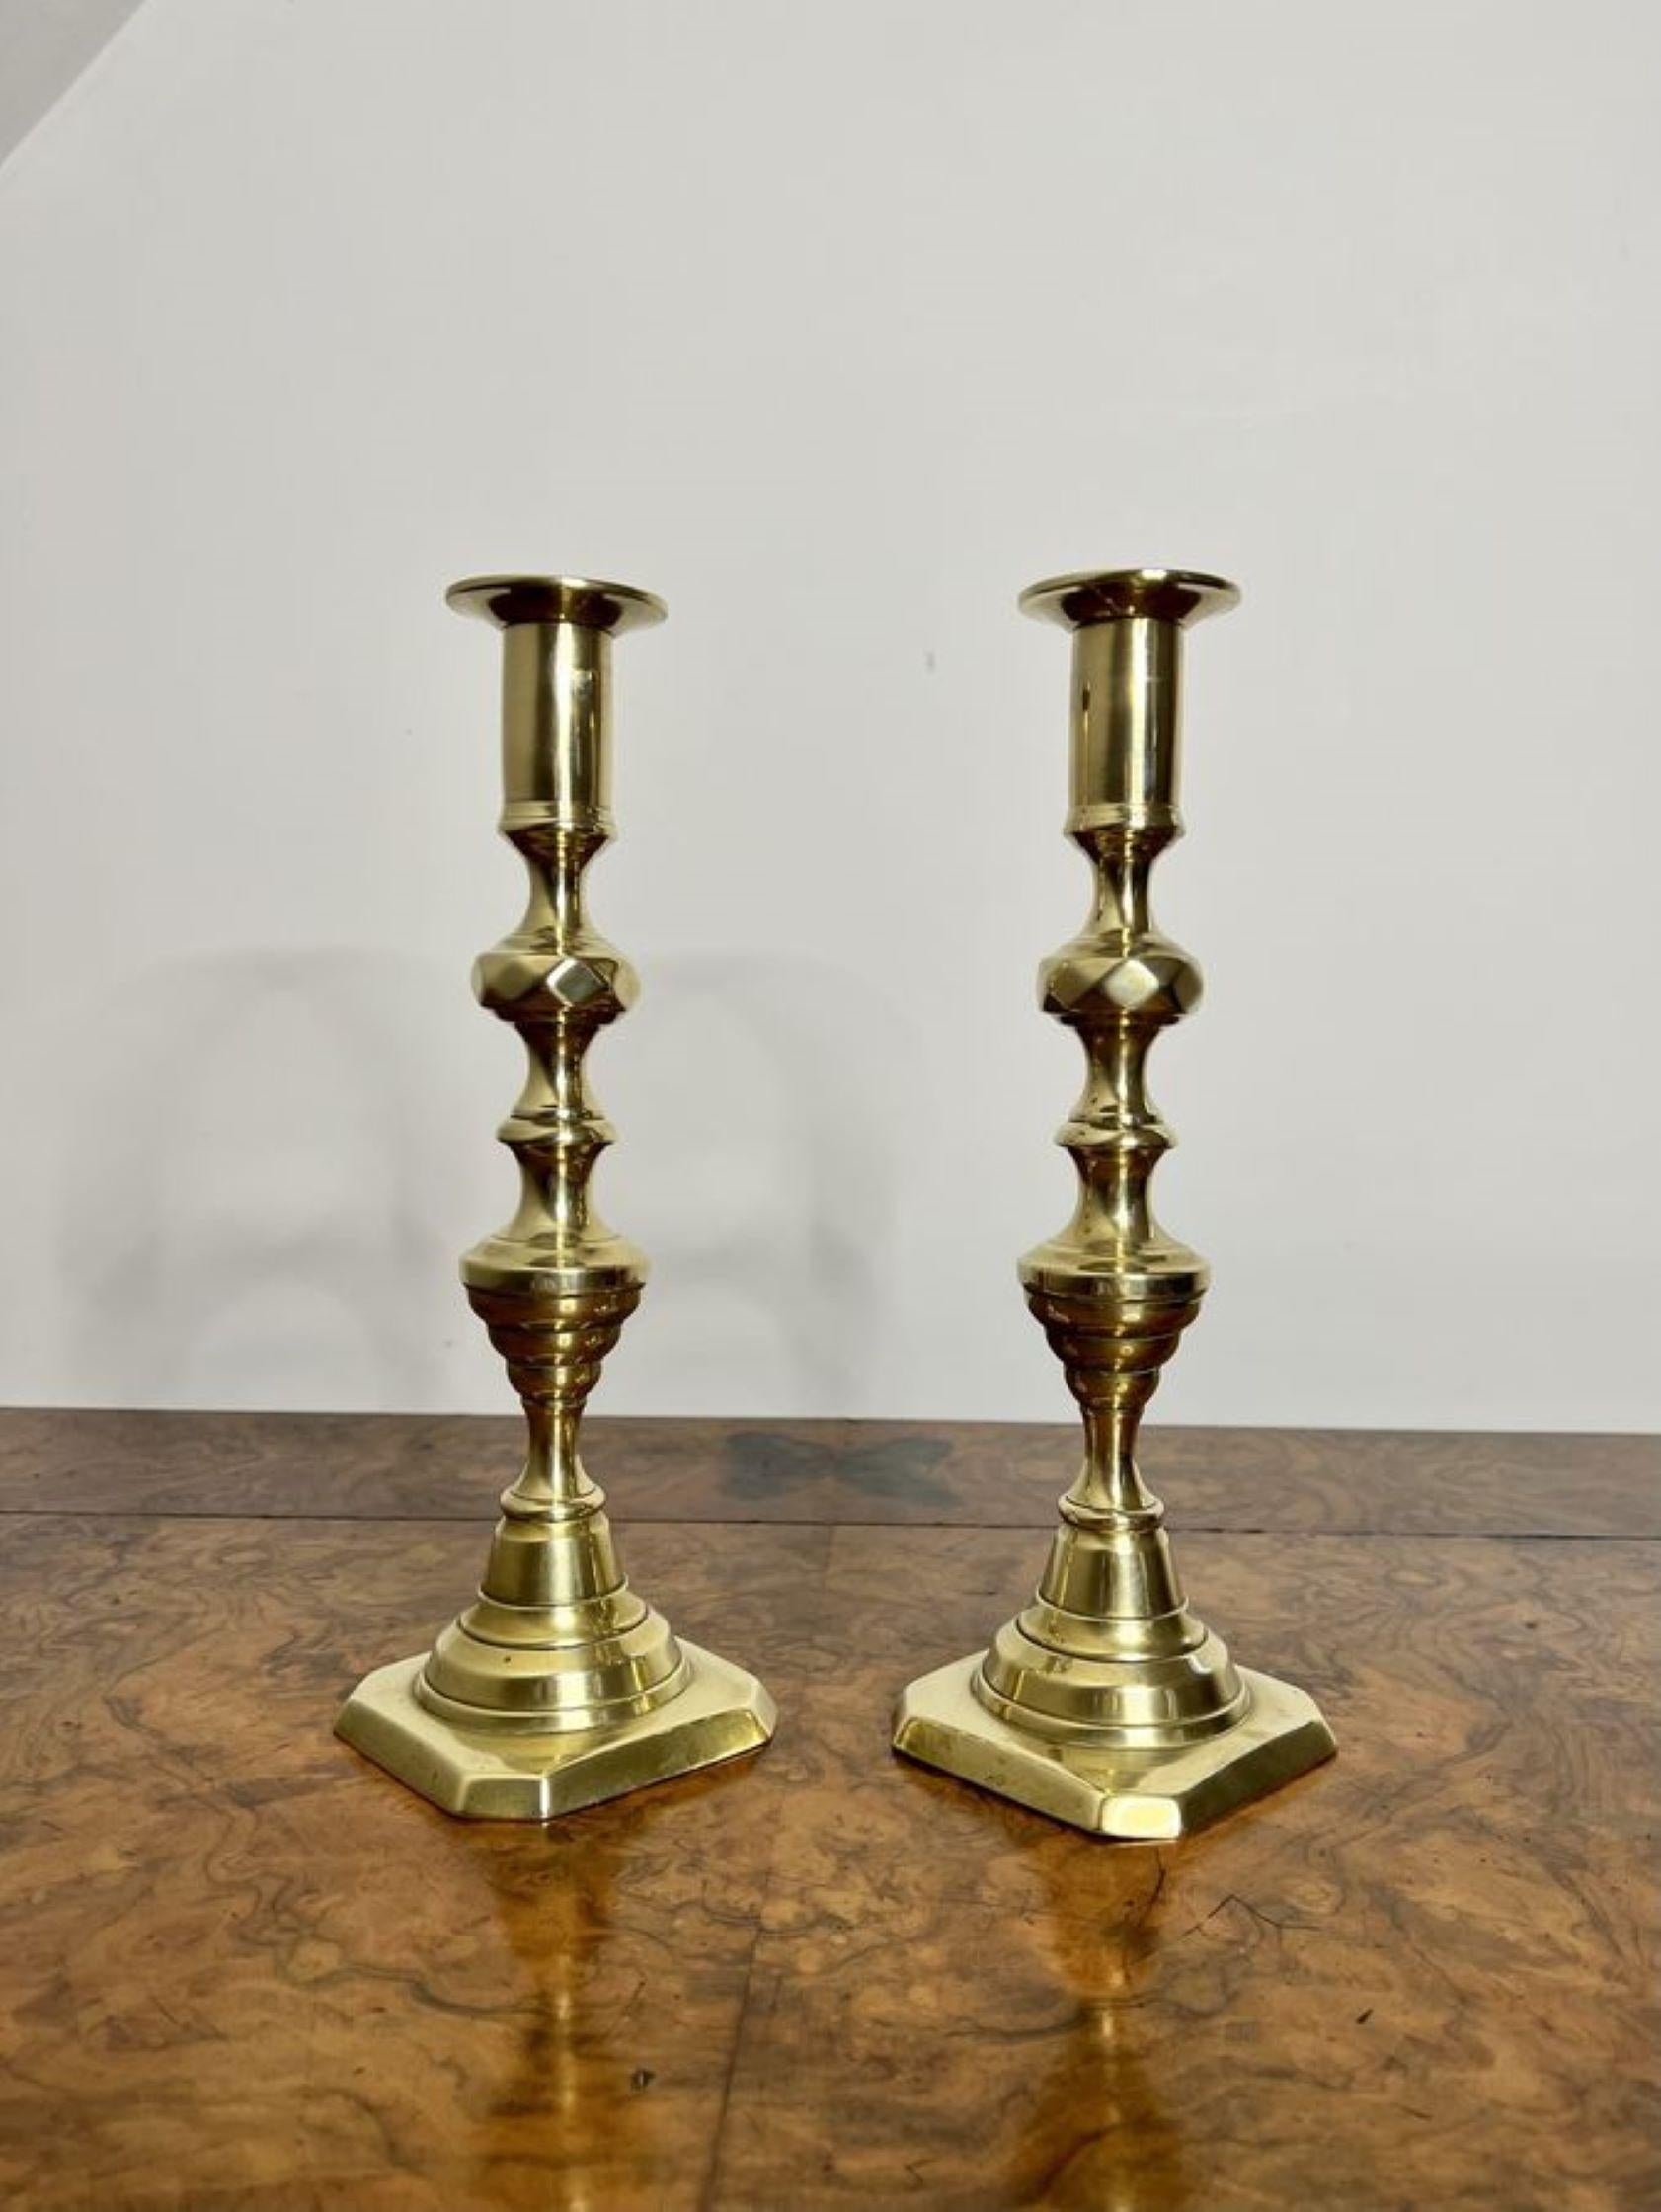 Schönes Paar antiker viktorianischer Messing-Kerzenständer mit einem Paar antiker viktorianischer Messing-Kerzenständer mit einer gedrehten, geformten Säule auf einem abgestuften Sockel.

D. 1860
